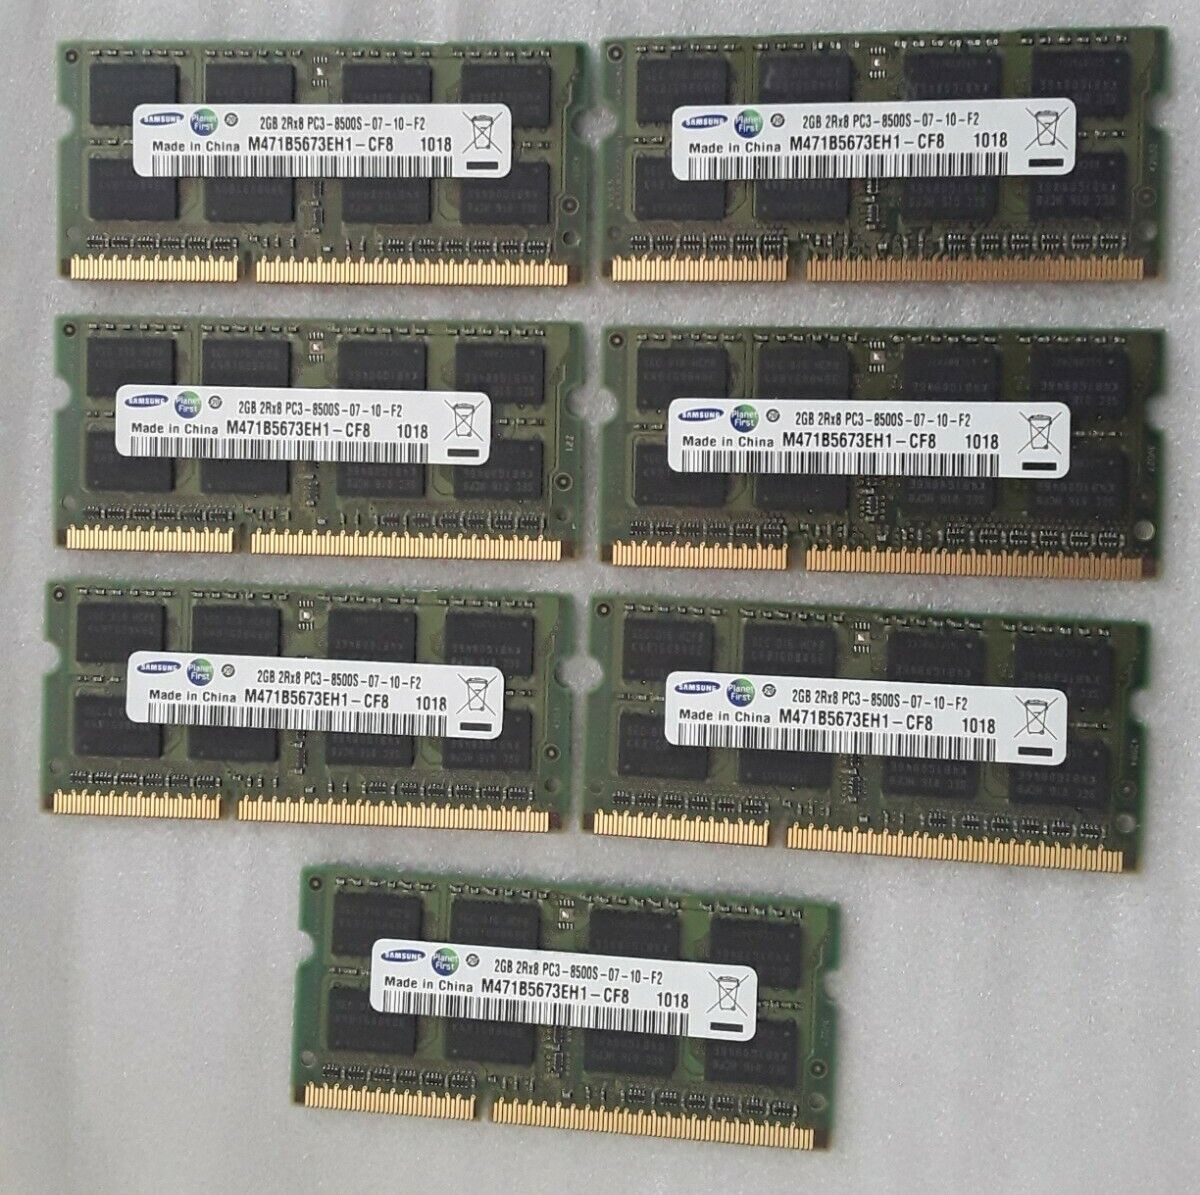 Lot of 7 Samsung M471B5673EH1-CF8 2GB PC3-8500S-07-10-F2 DDR3-1066MHz Memory RAM